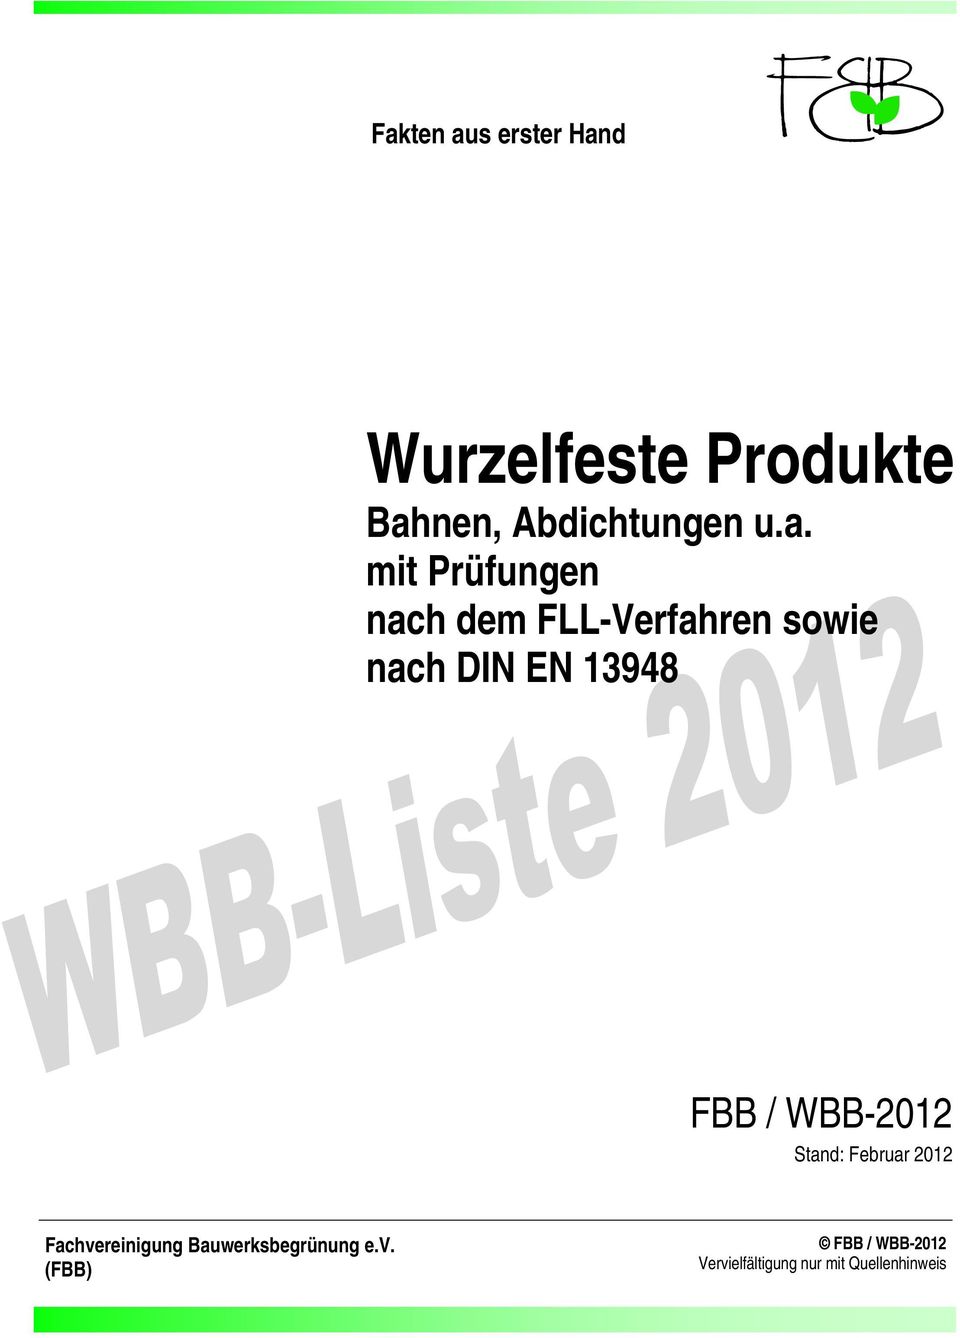 FLL-Verfahren sowie nach 1948 FBB / WBB-2012